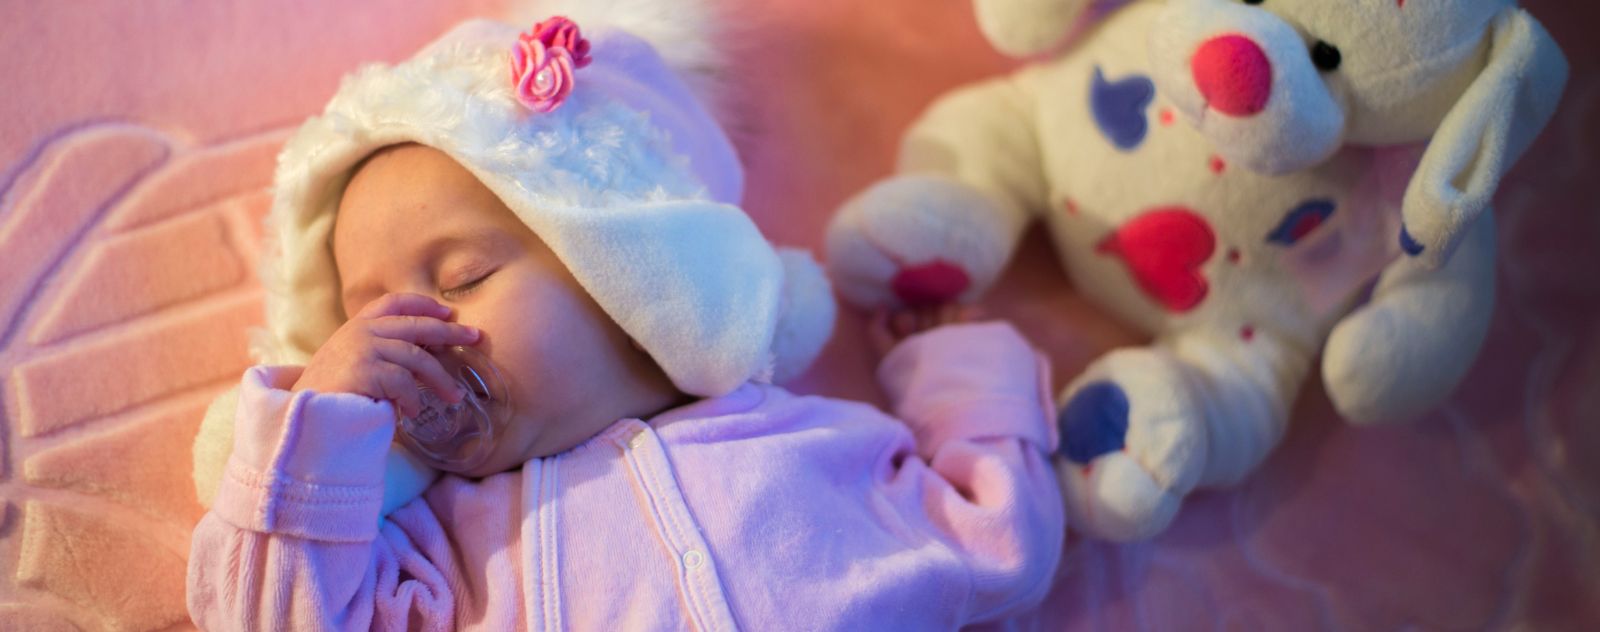 Le manque de sommeil chez le bébé et l'enfant - Lilinappy